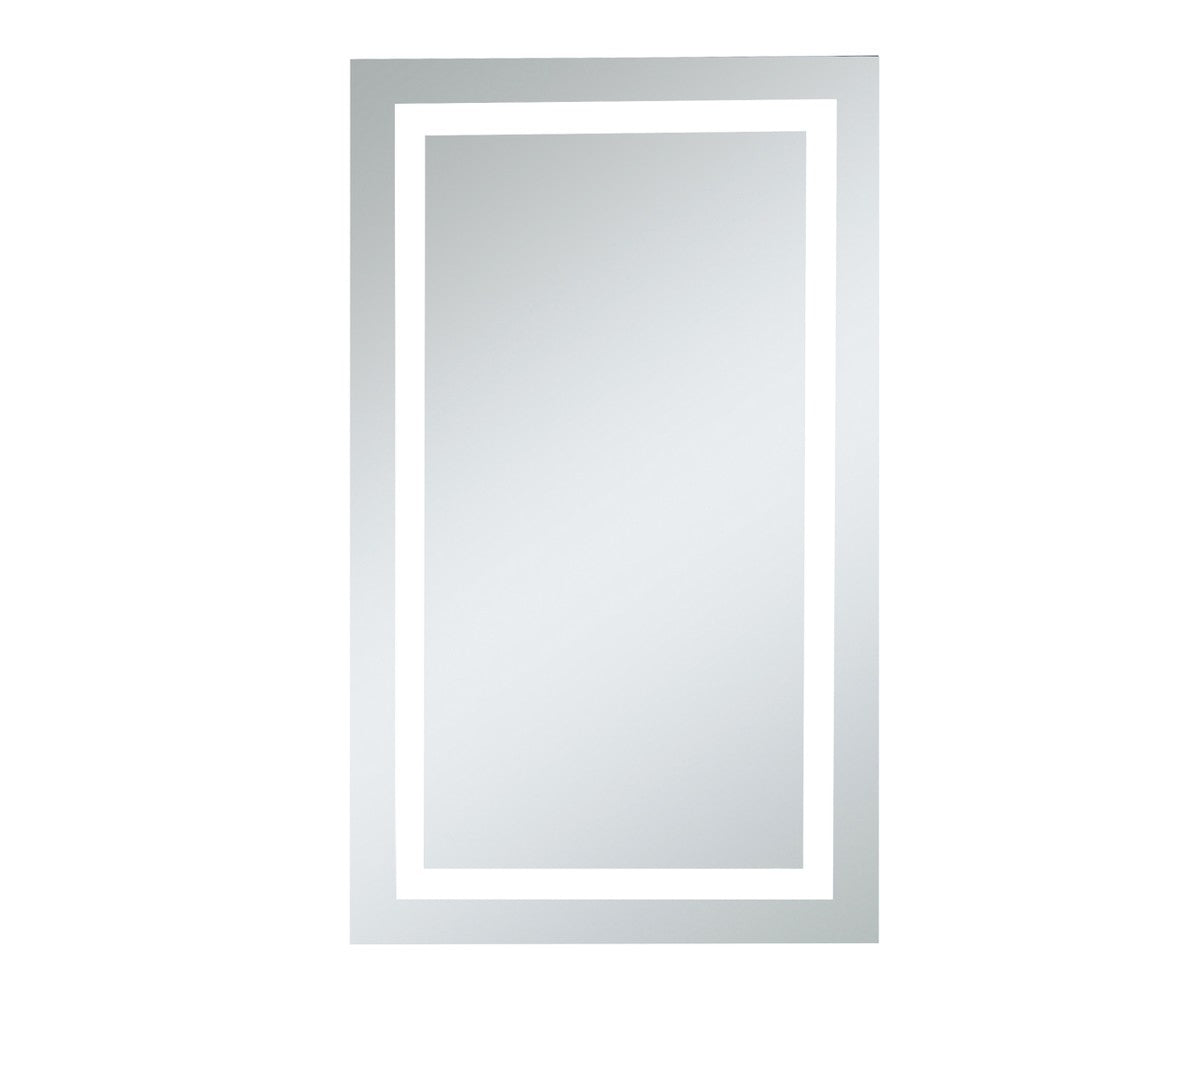 Elegant Lighting - MRE-6004 - LED Mirror - Nova - Glossy White